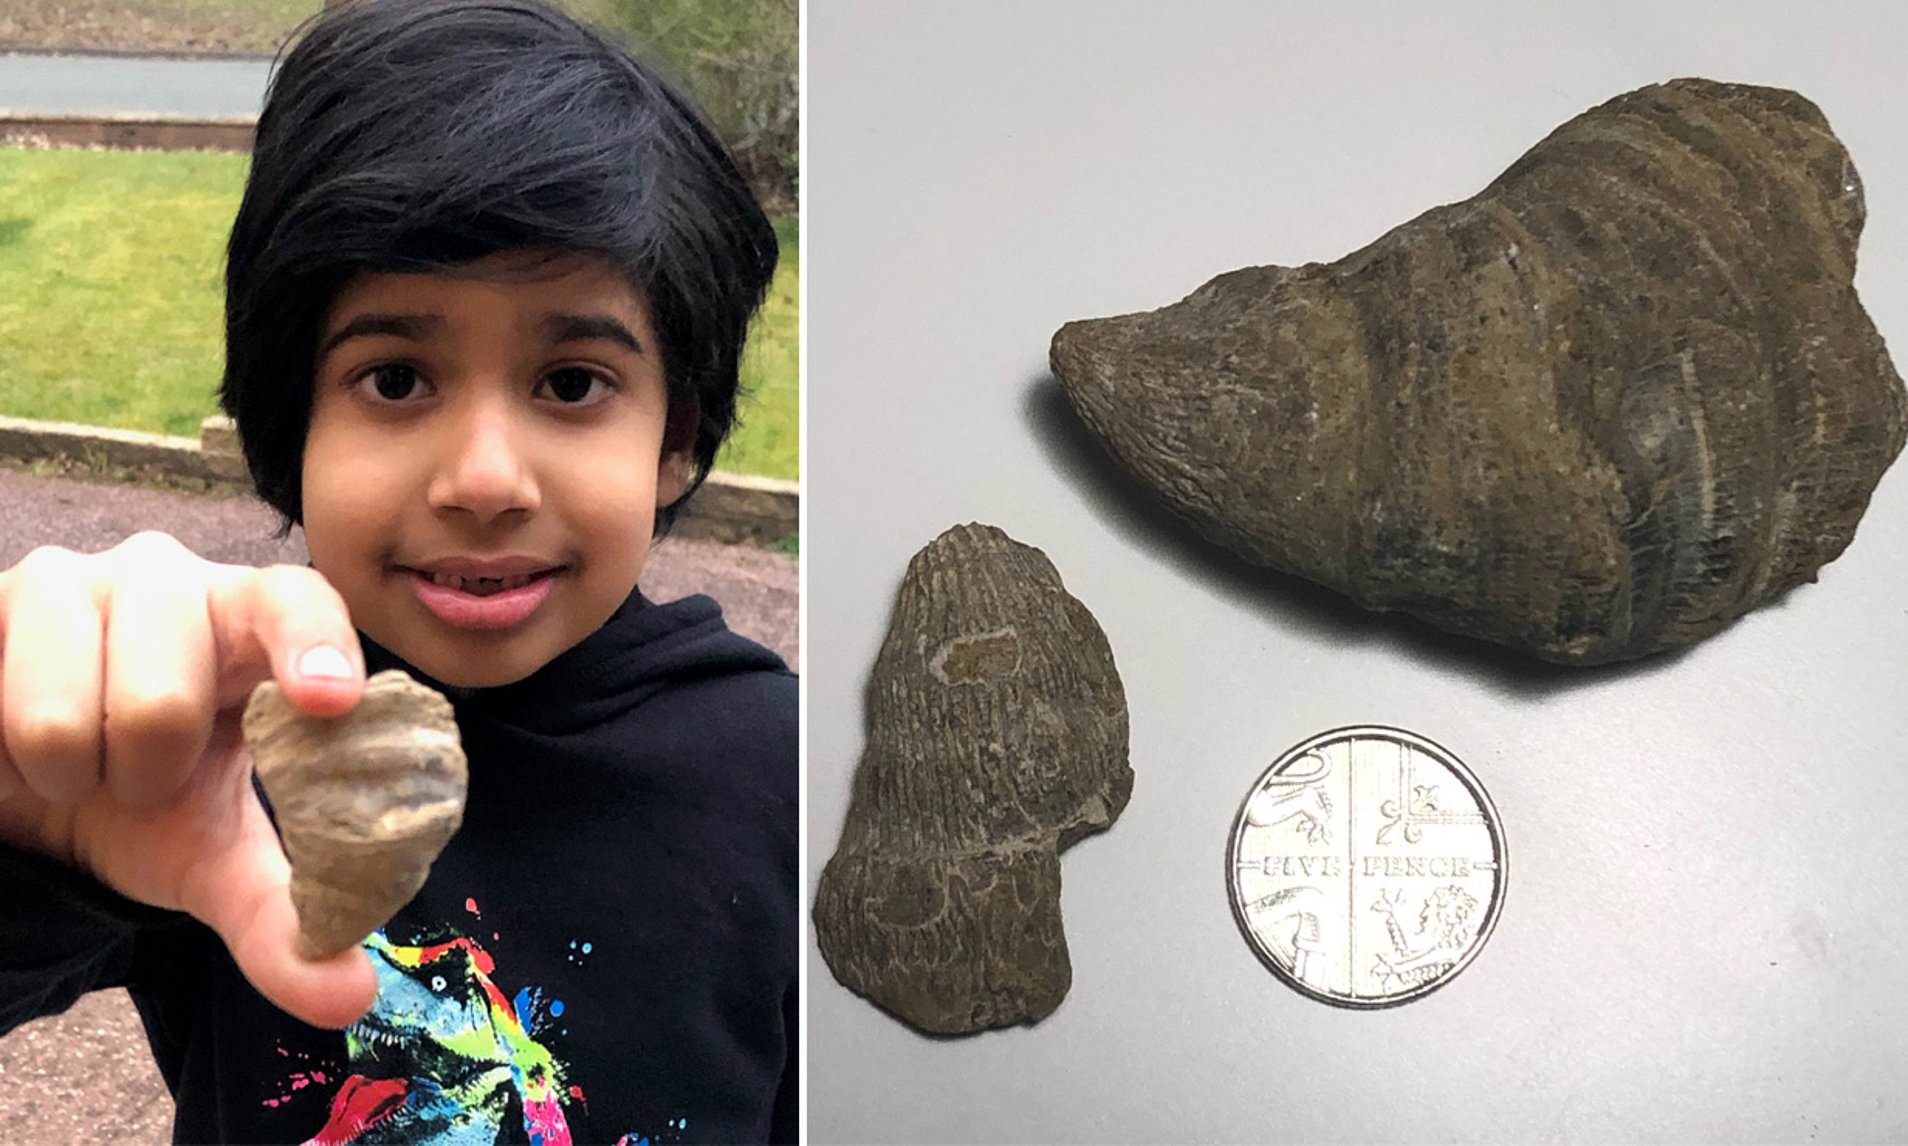 El niño que halló un fósil en su jardín exhibe orgulloso su descubrimiento.